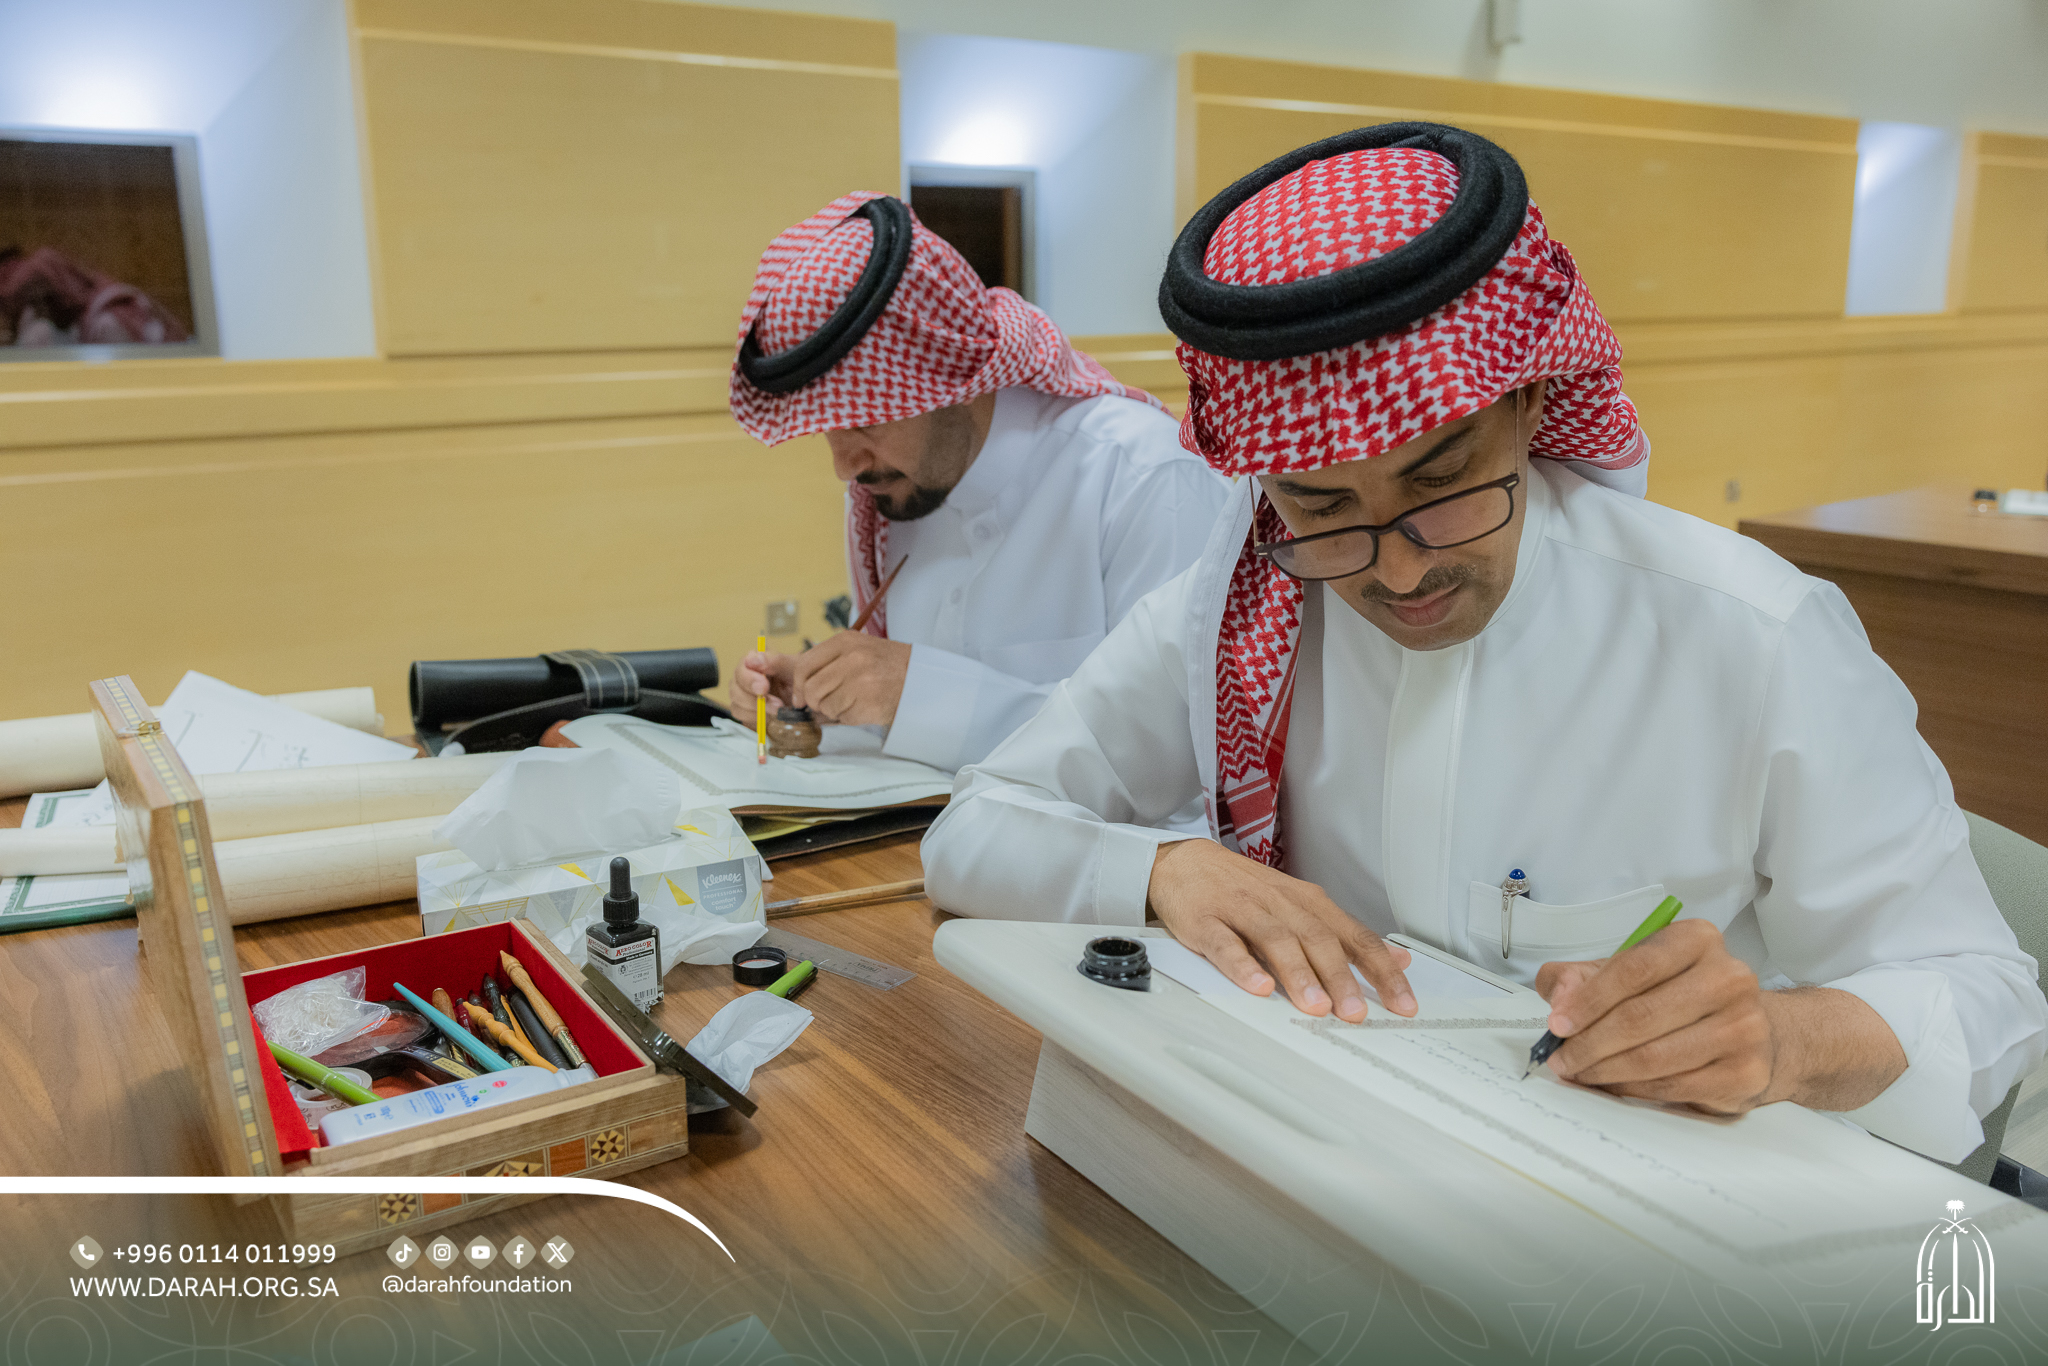 الدارة تطلق أول ورشة تدريبية لنسخ المصاحف بالرسم العثماني في الوطن العربي